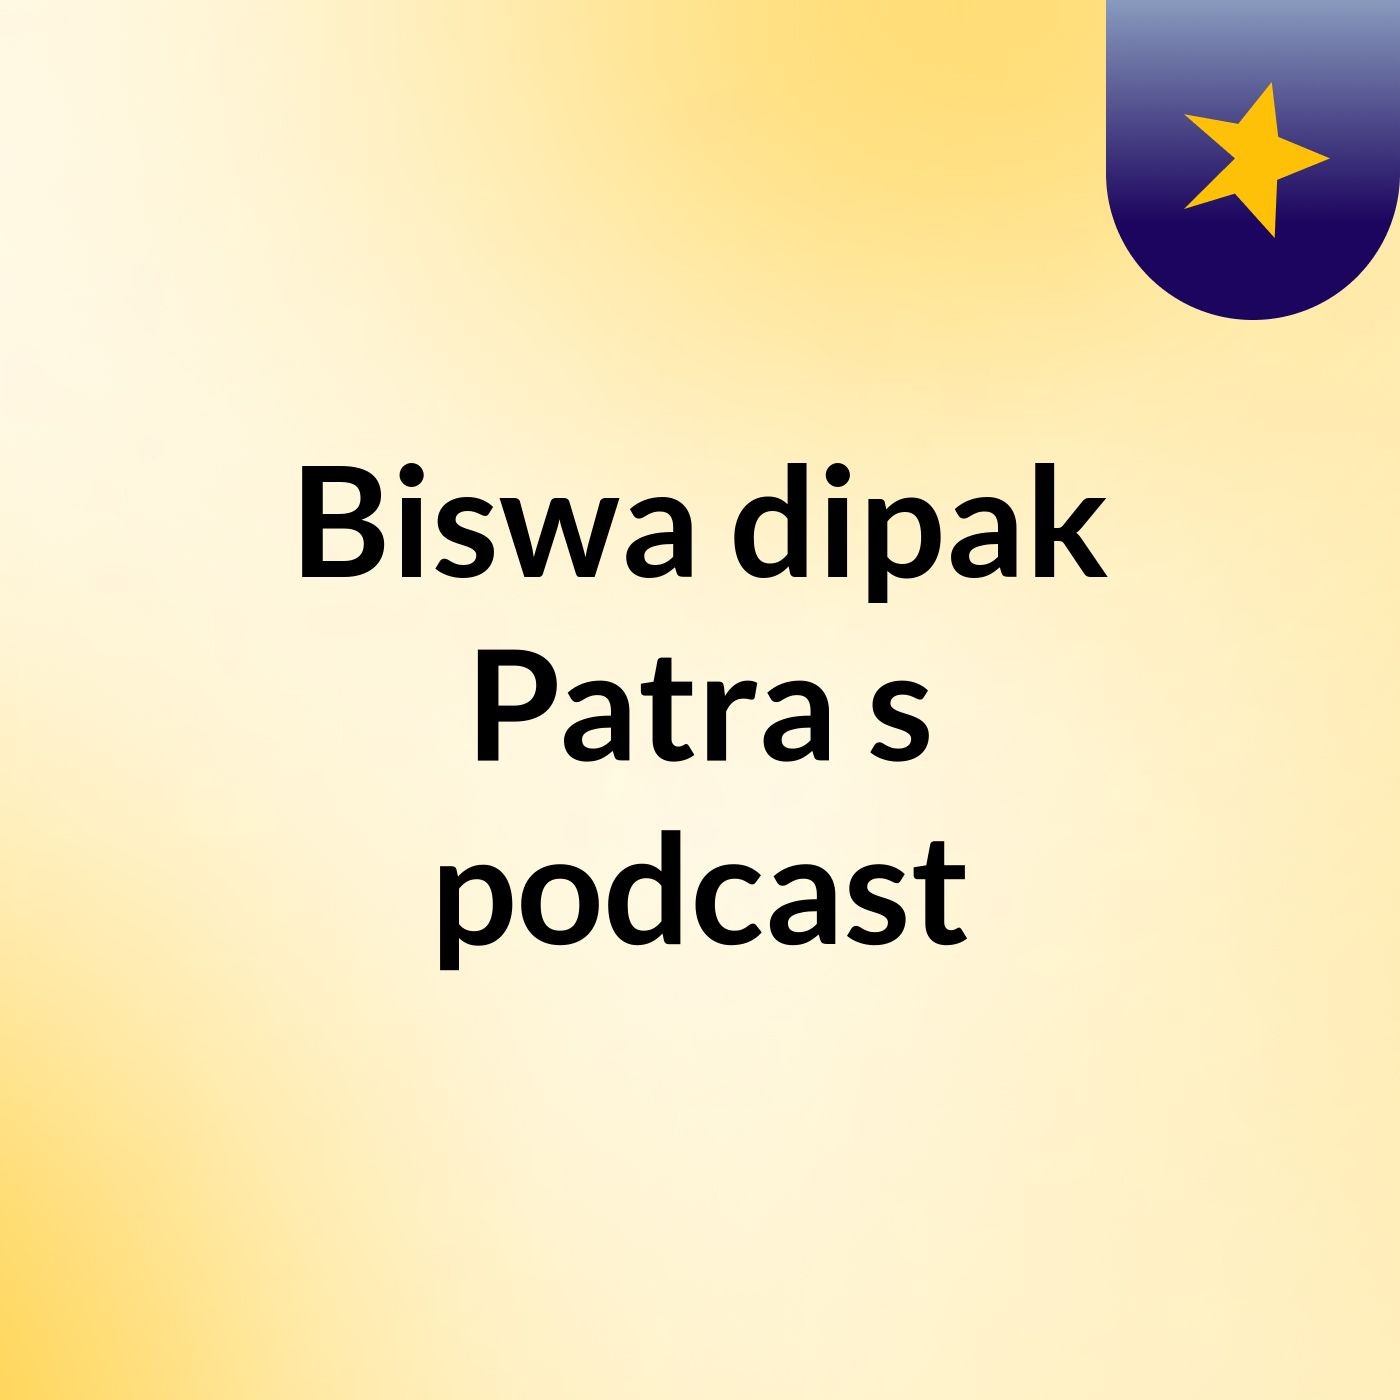 Biswa dipak Patra's podcast